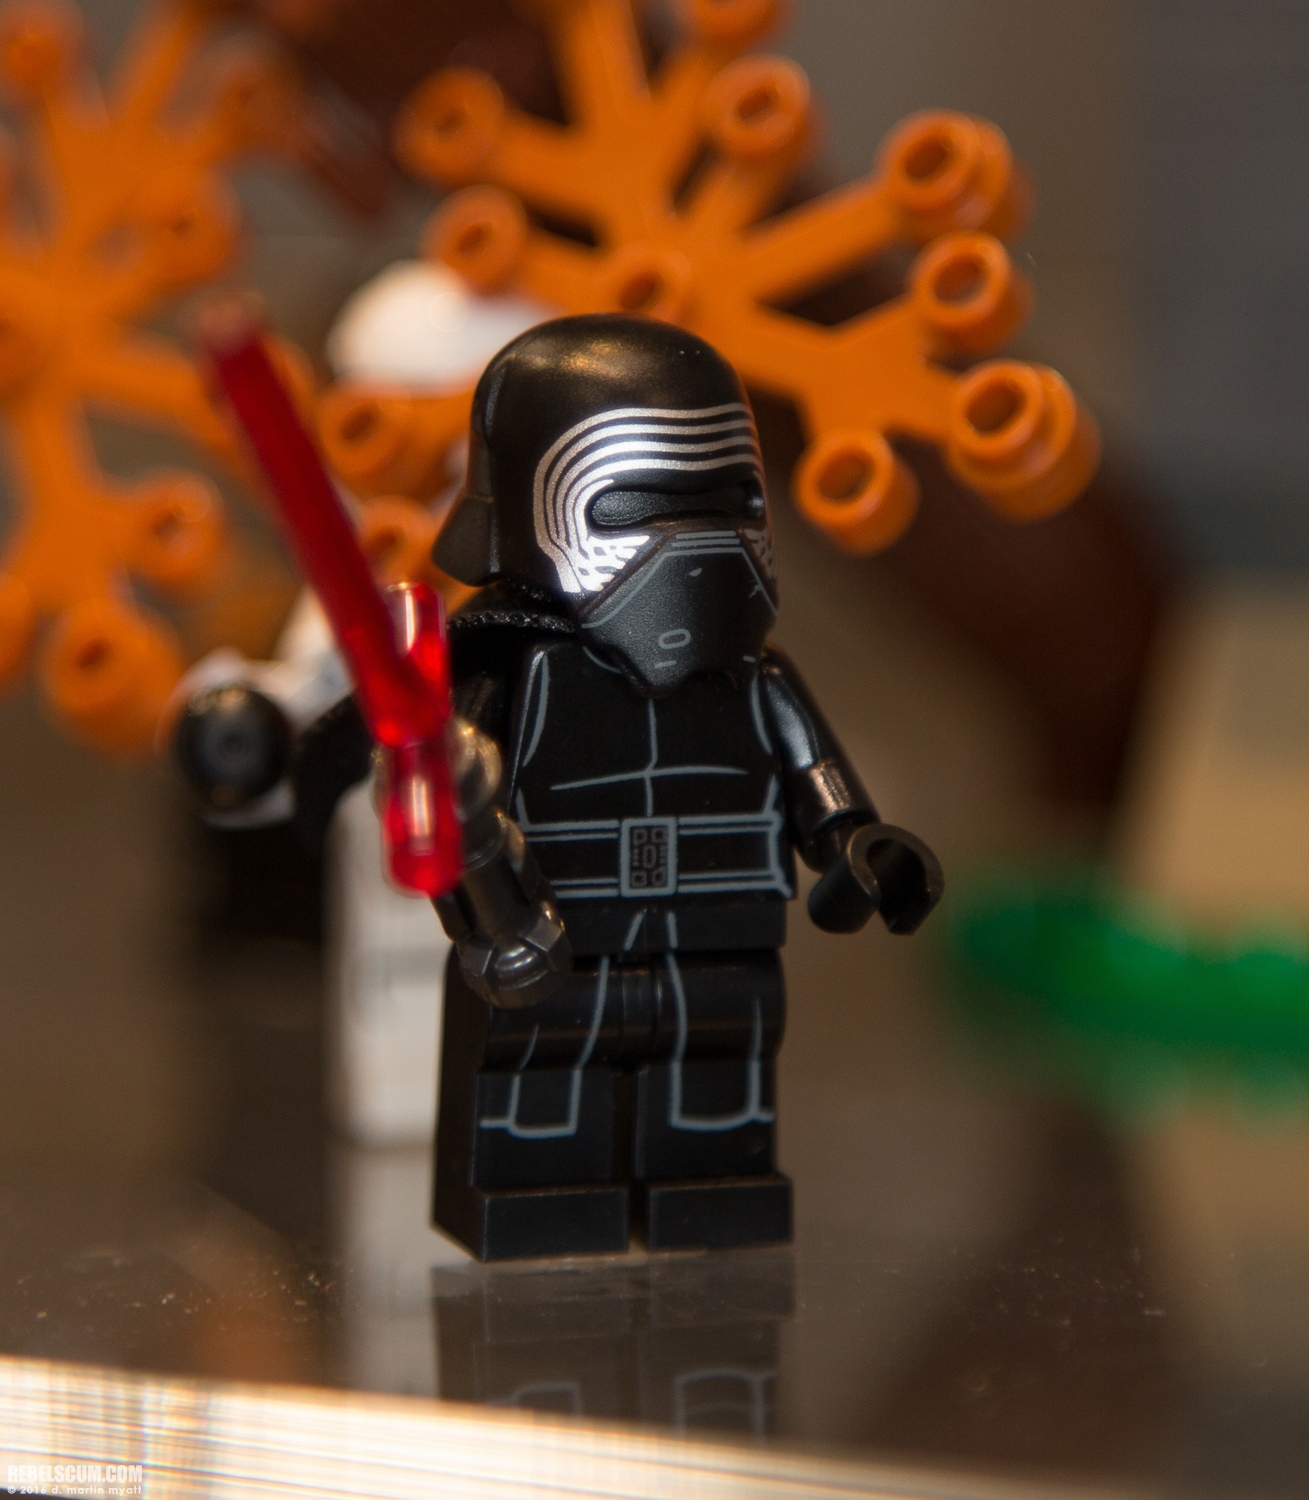 LEGO-2015-International-Toy-Fair-Star-Wars-024.jpg